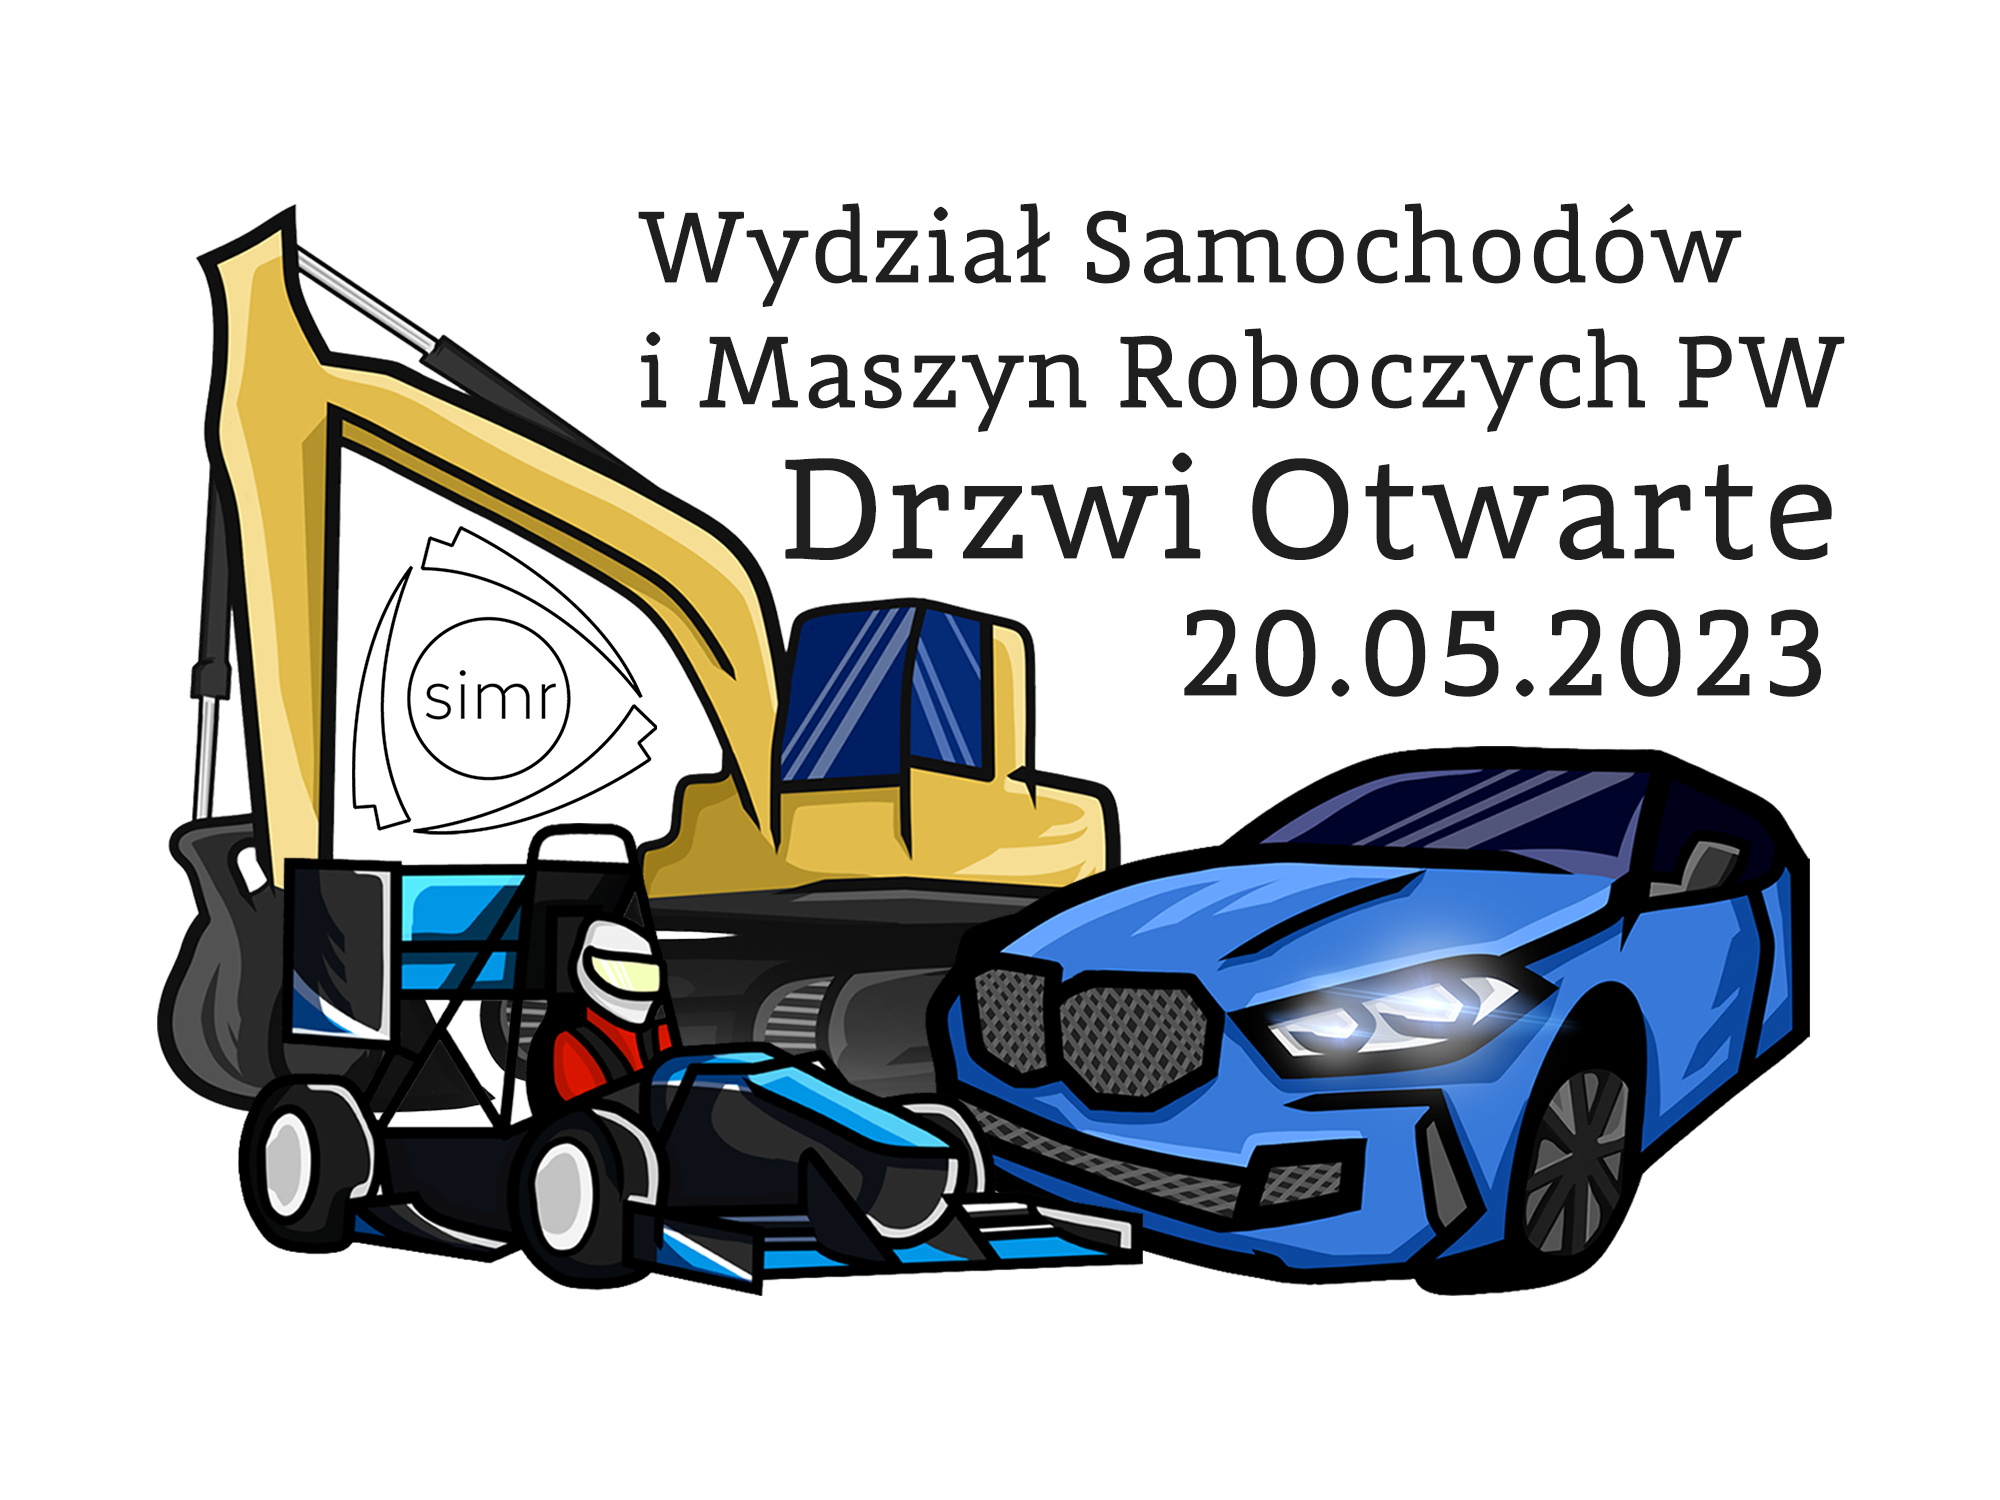 Koparka, miniaturowy bolid formuły 1 i samochód osobowy w stylu kreskówkowym, obok napis "Wydział Samochodów i Maszyn Roboczych PW", Drzwi Otwarte 20.05.2023